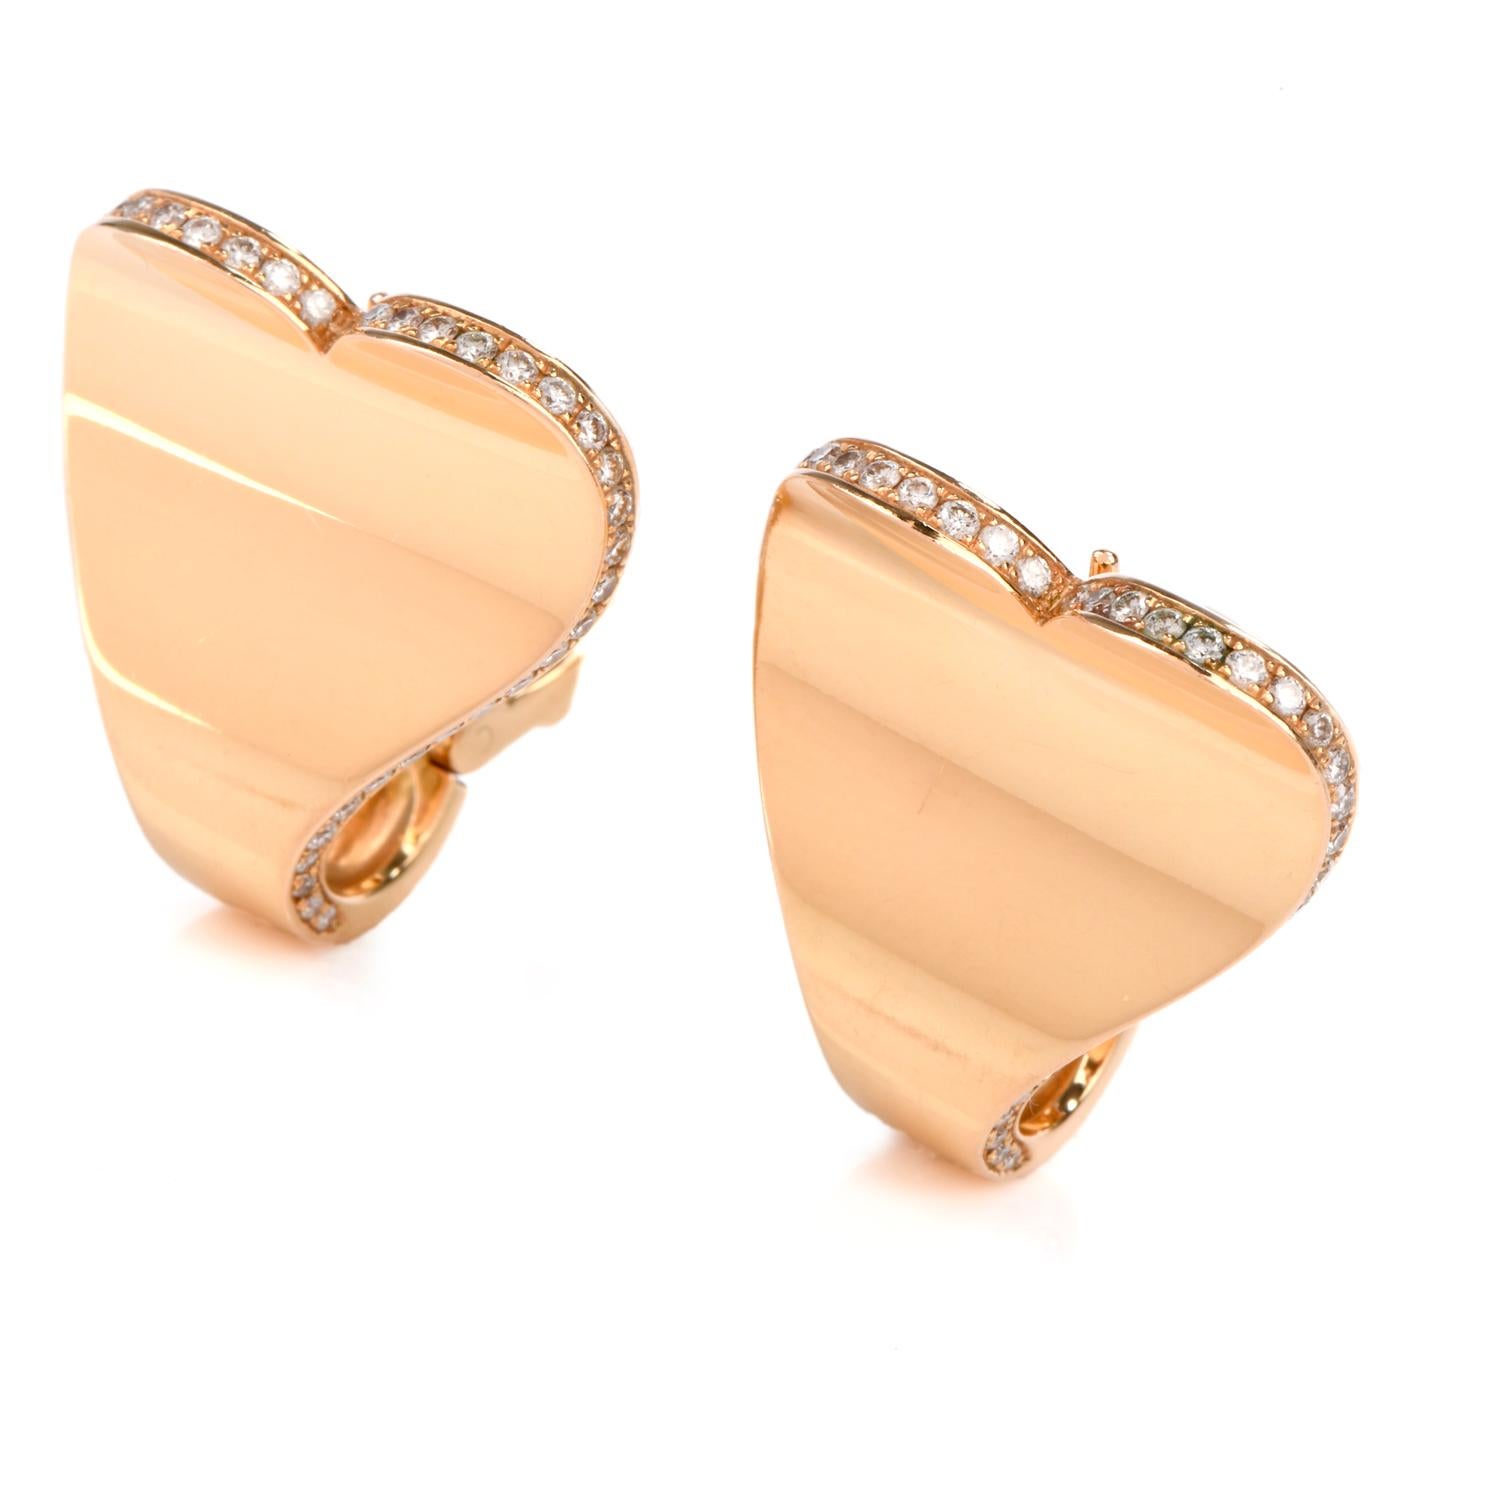 Diese mit Liebe gefüllten Diamantohrringe von Roger Dubuis wurden von einem Herzmotiv inspiriert

und aus 18 Karat Gelbgold gefertigt.

100 runde Diamanten im Brillantschliff schmücken die äußeren Kanten und wiegen ca. 1,00 Karat und sind von F-G